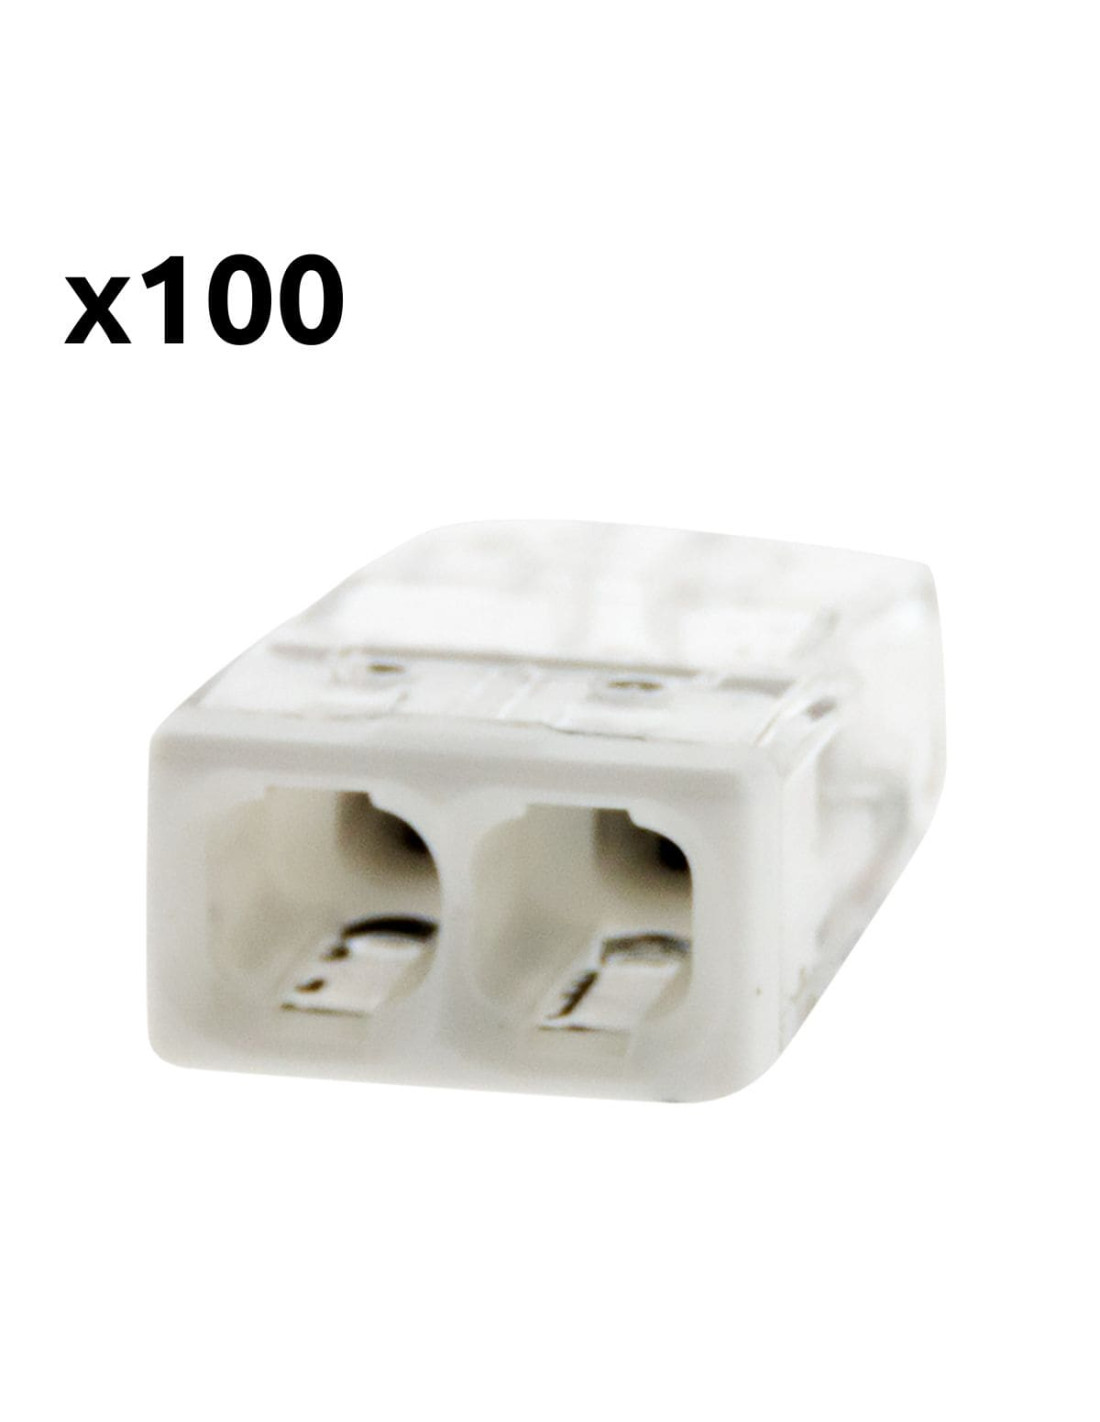 Lot de 10 connecteurs 2 fils rigides/1 fil souple